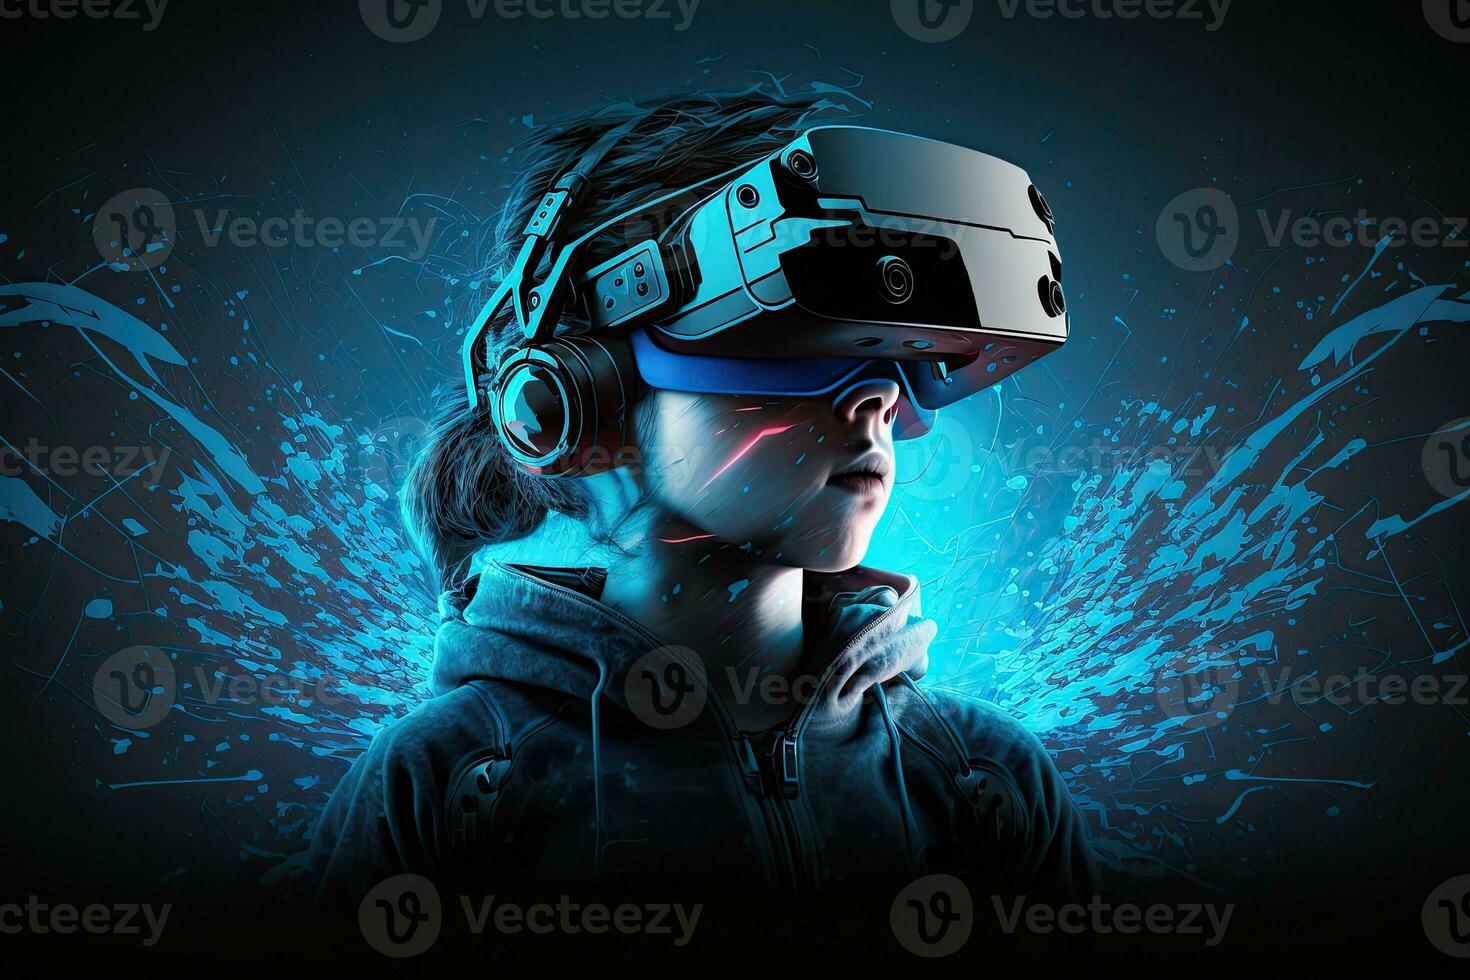 trogen kvinna i virtuell verklighet glasögon på de bakgrund av en neon stad. cyberpunk, retrovåg, synthwave, hög definition, konst, generativ artificiell intelligens. foto